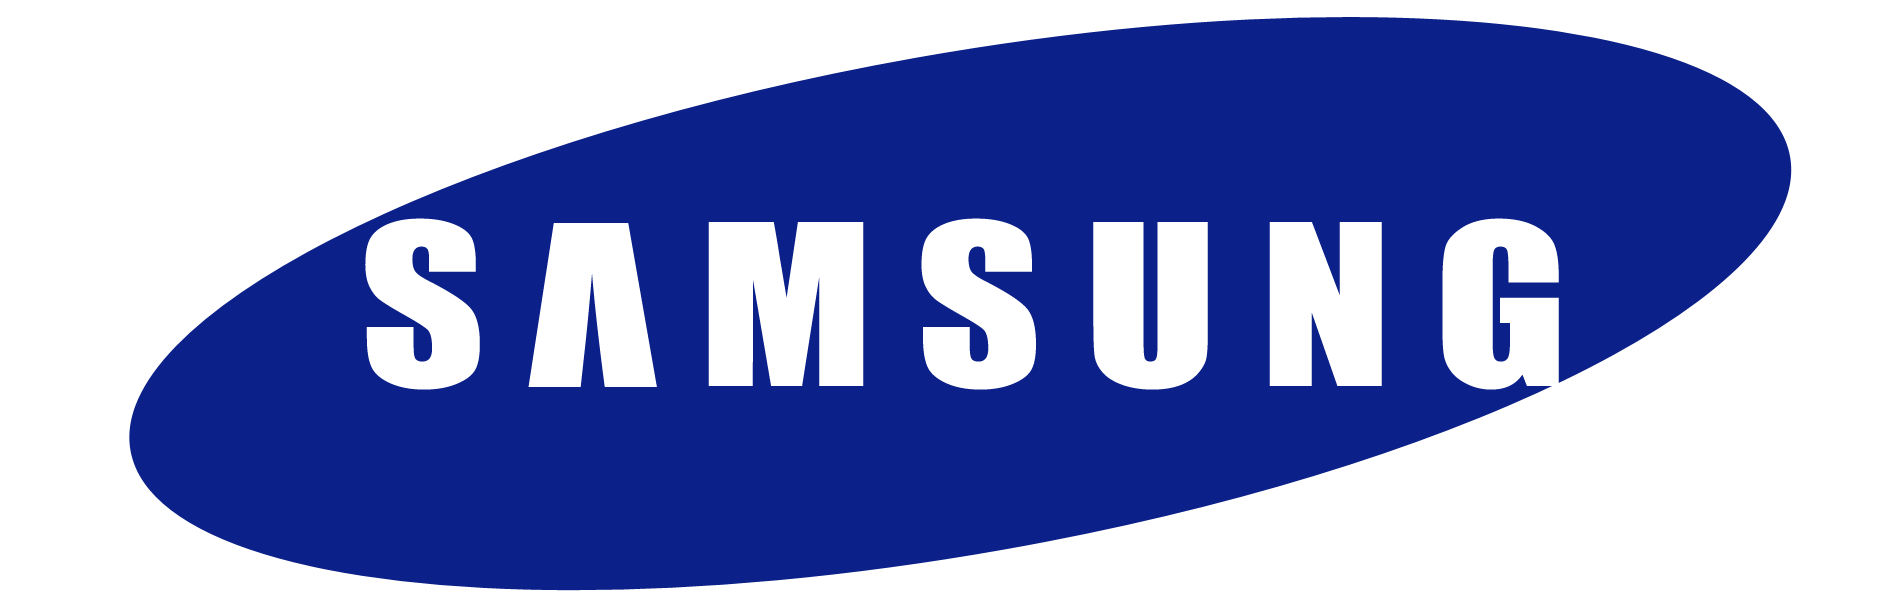 original samsung logo 10 1